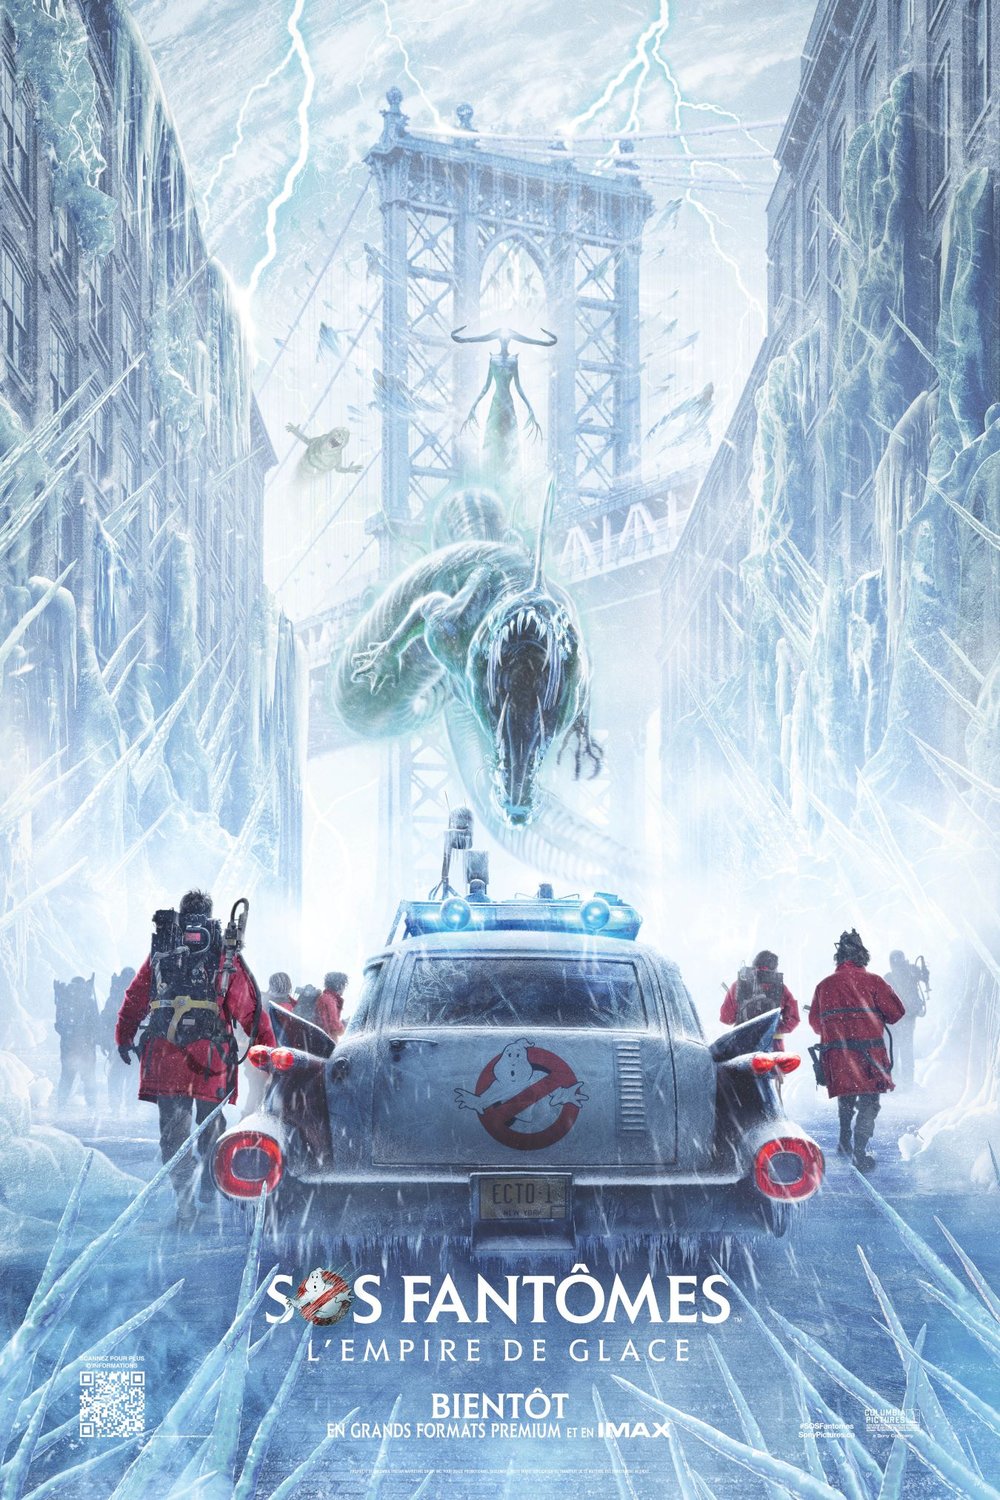 L'affiche du film SOS Fantômes: L'empire de glace